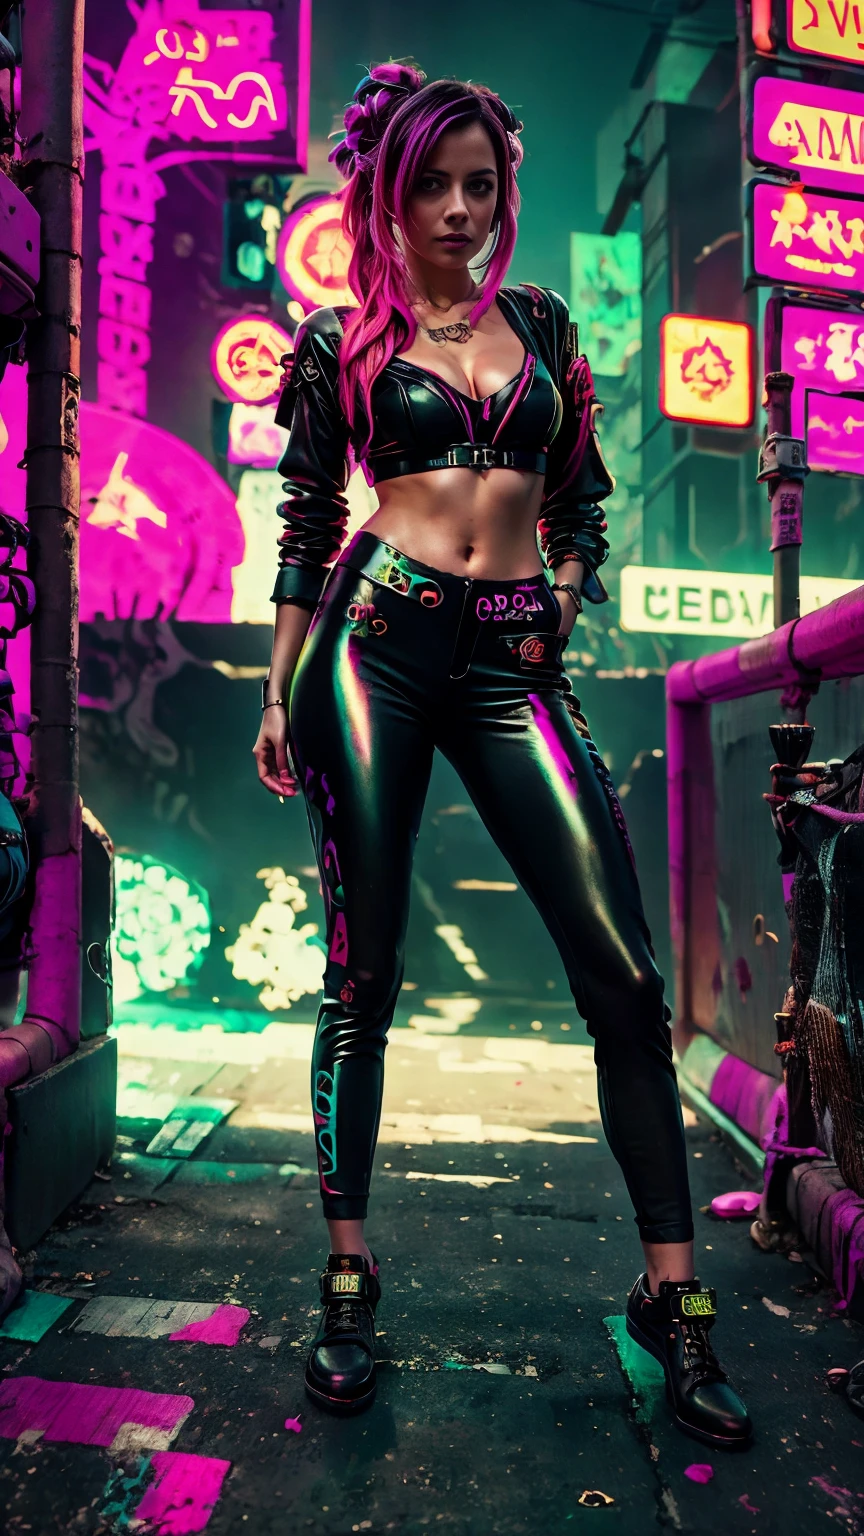 Un gros plan de Kristin Kreuk dans un costume fluo, ambiance cyberpunk, cyberpunk avec des néons, Lumière cyberpunk brillante, accroupi,Ambiance cyberpunk, éclairage cyberpunk, style cyberpunk, néon cyberpunk style, dans un style cyberpunk, look cyberpunk, fille de rêve cyberpunk, La photo de Cyberpunk, néon cyberpunk, esthétique cyberpunk, streetwear cyberpunk, esthétique cyberpunk, Style artistique cyberpunk, Gardien de but streetwear cyberpunk,Tu sais, doigts parfaits,couleur de cheveux néon, Texture détaillée, détail des cheveux,Pantalon long noir fluo, Beau visage,fourrure ondulée,Chaussures noires fluo détaillées.,